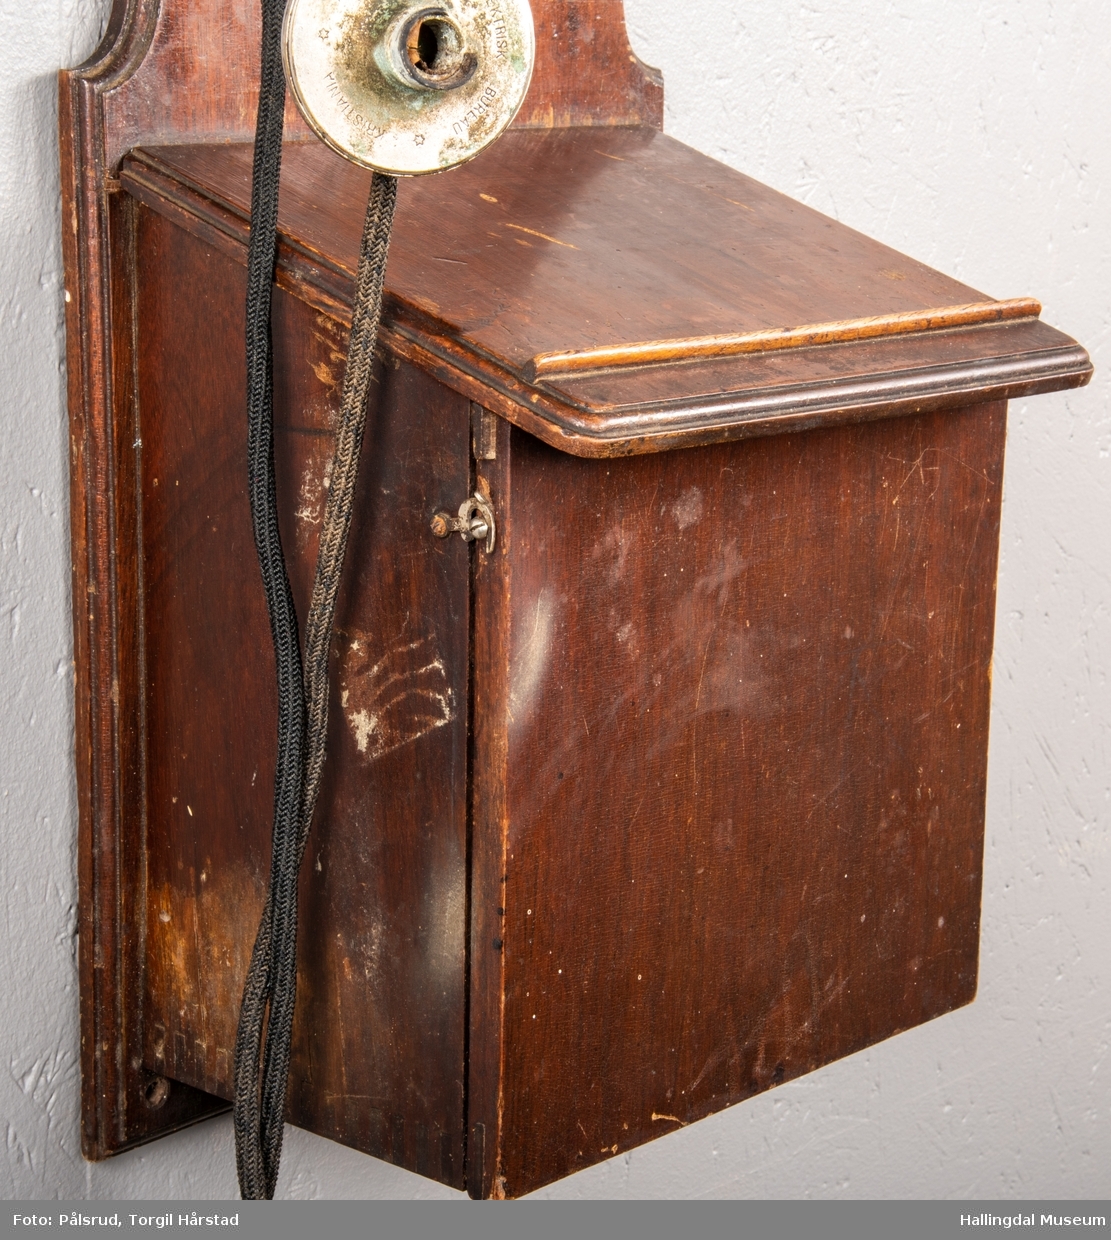 En veggtelefon i tre med to ringeklokker i blank metall øverst på boks. Svart leding koblet til telefonrør og sveiv med svart plasthåndtak på motsatt side. Flere ledninger på baksiden. Nederst en boks i tre for oppbevaring av to batterier produsert av Norsk Akkumulator Co. A/S - påskrevet dato 1953. Telefonen har tilhørende skriv med regler for telefonbruk for Tunhøvd - Næstelefon, med dato 1918. 